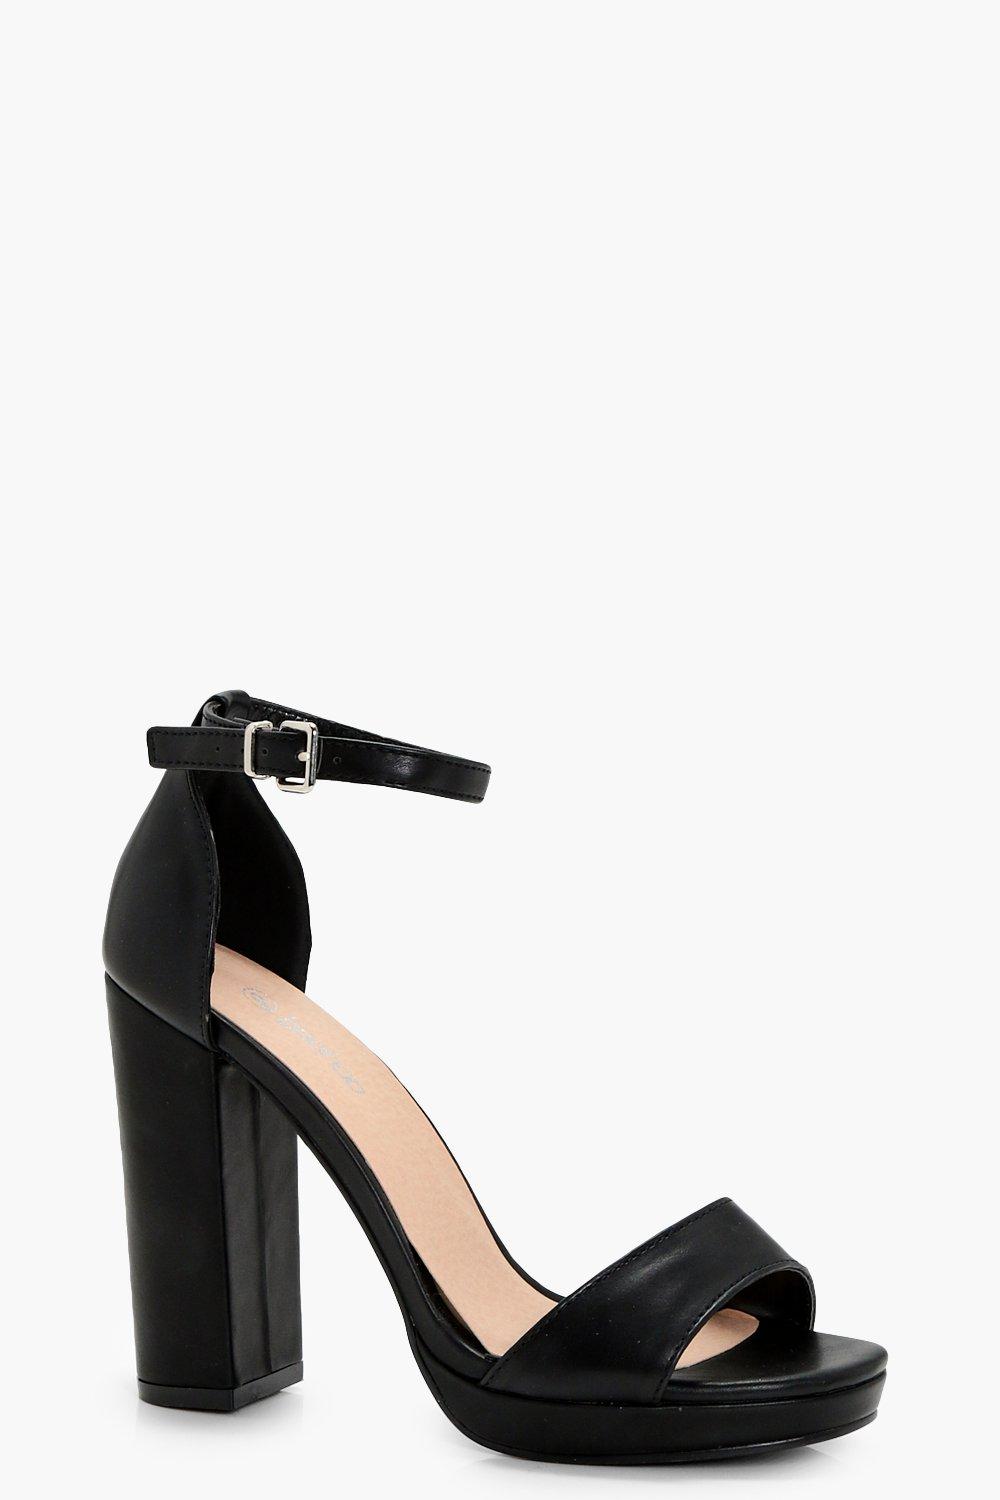 wide width block heels